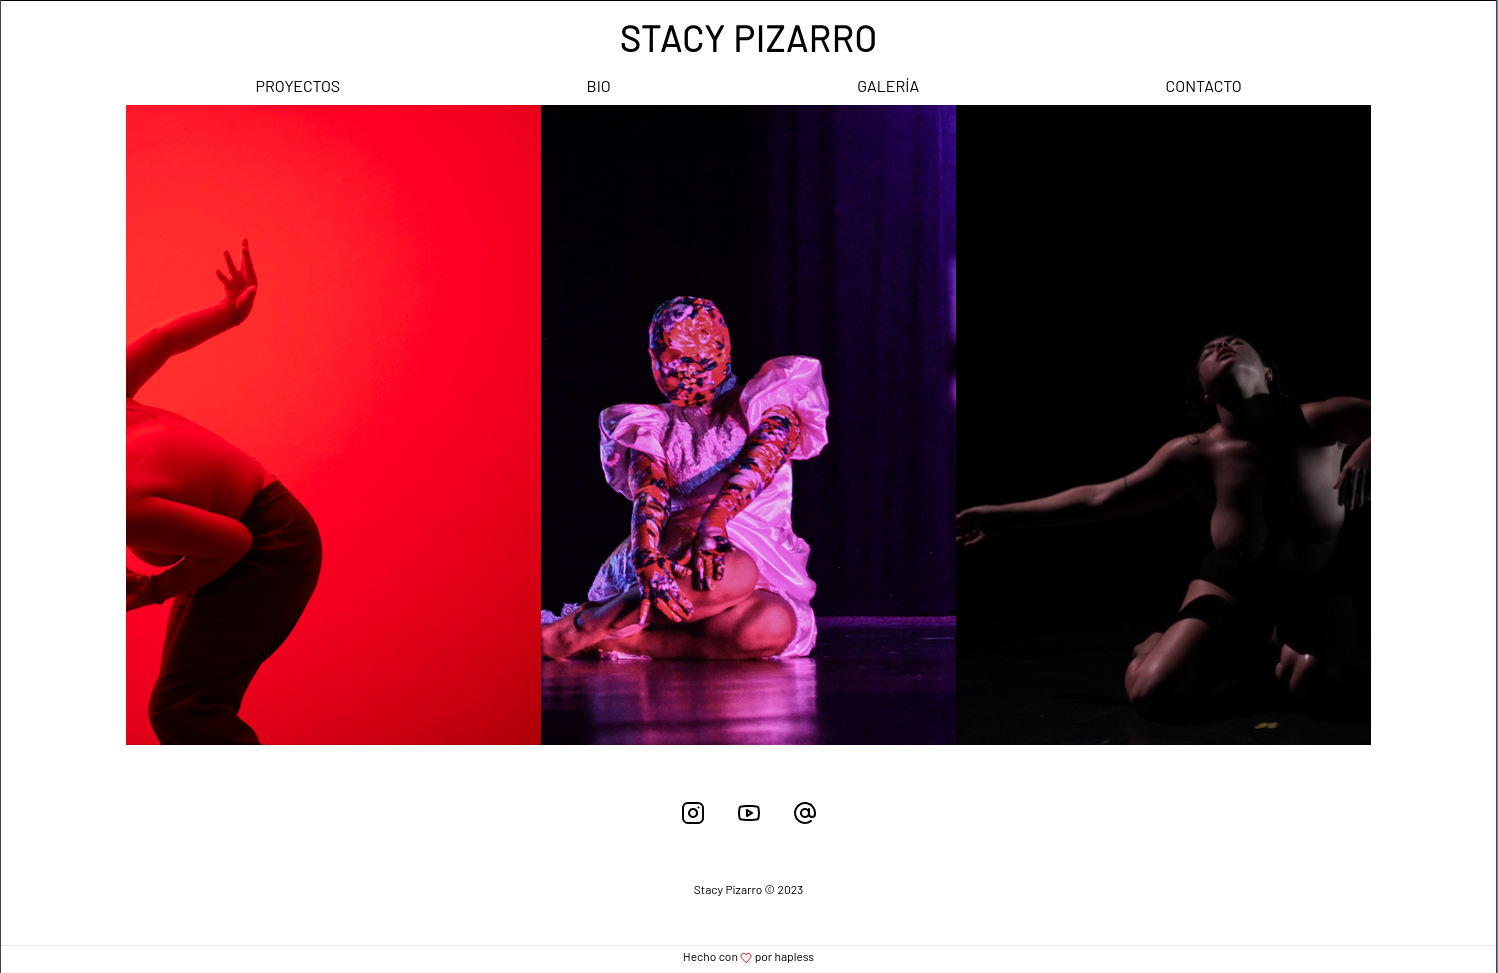 www.stacypizarro.com/projects